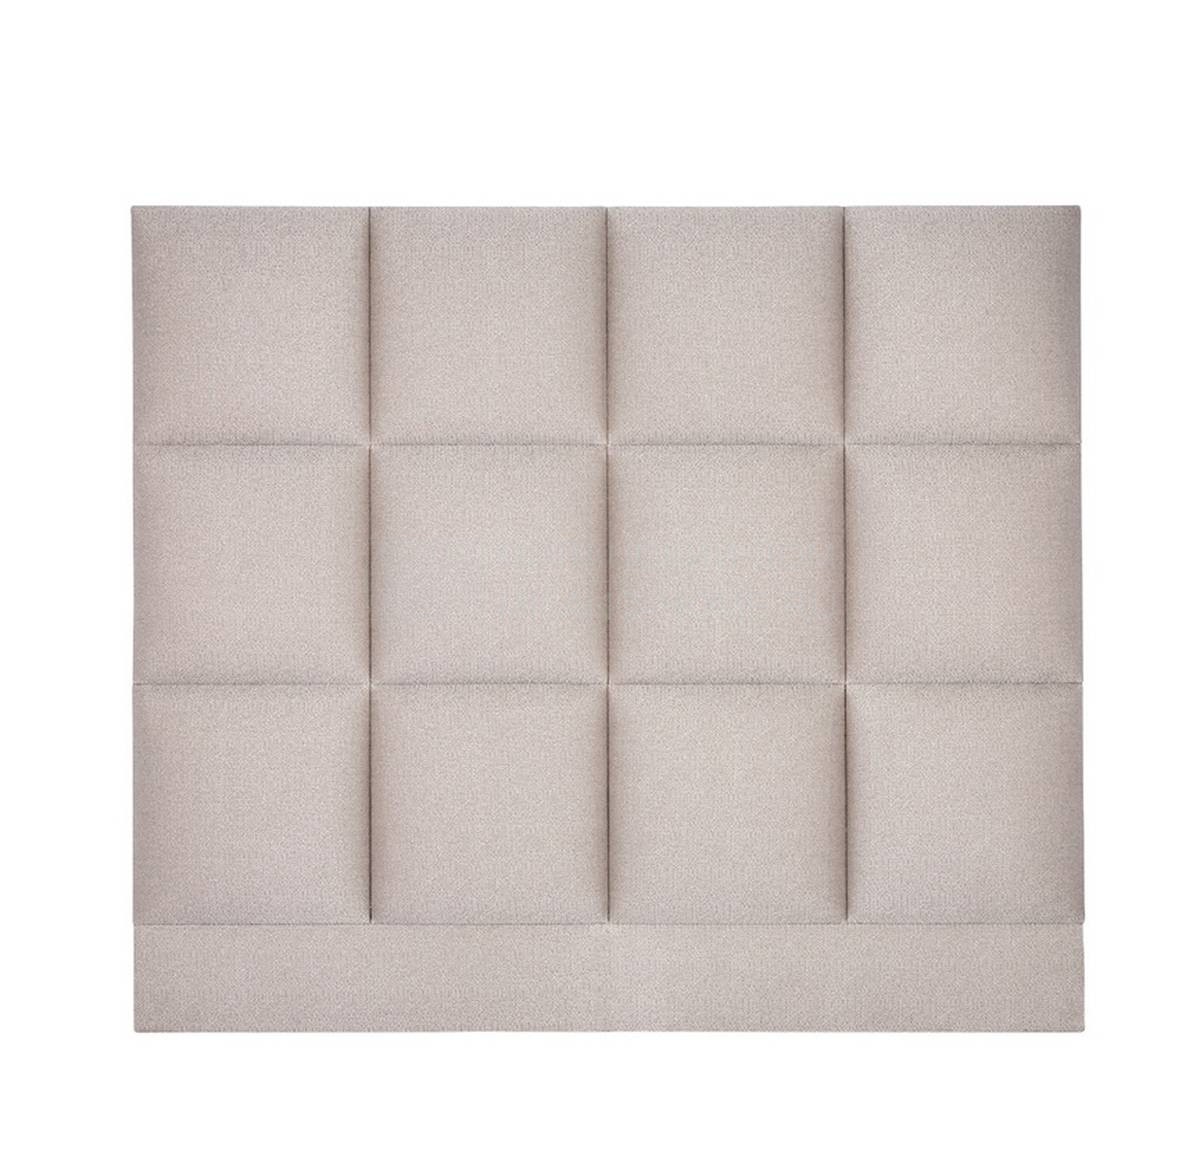 Изголовье Mondrian bed из Великобритания фабрики THE SOFA & CHAIR Company